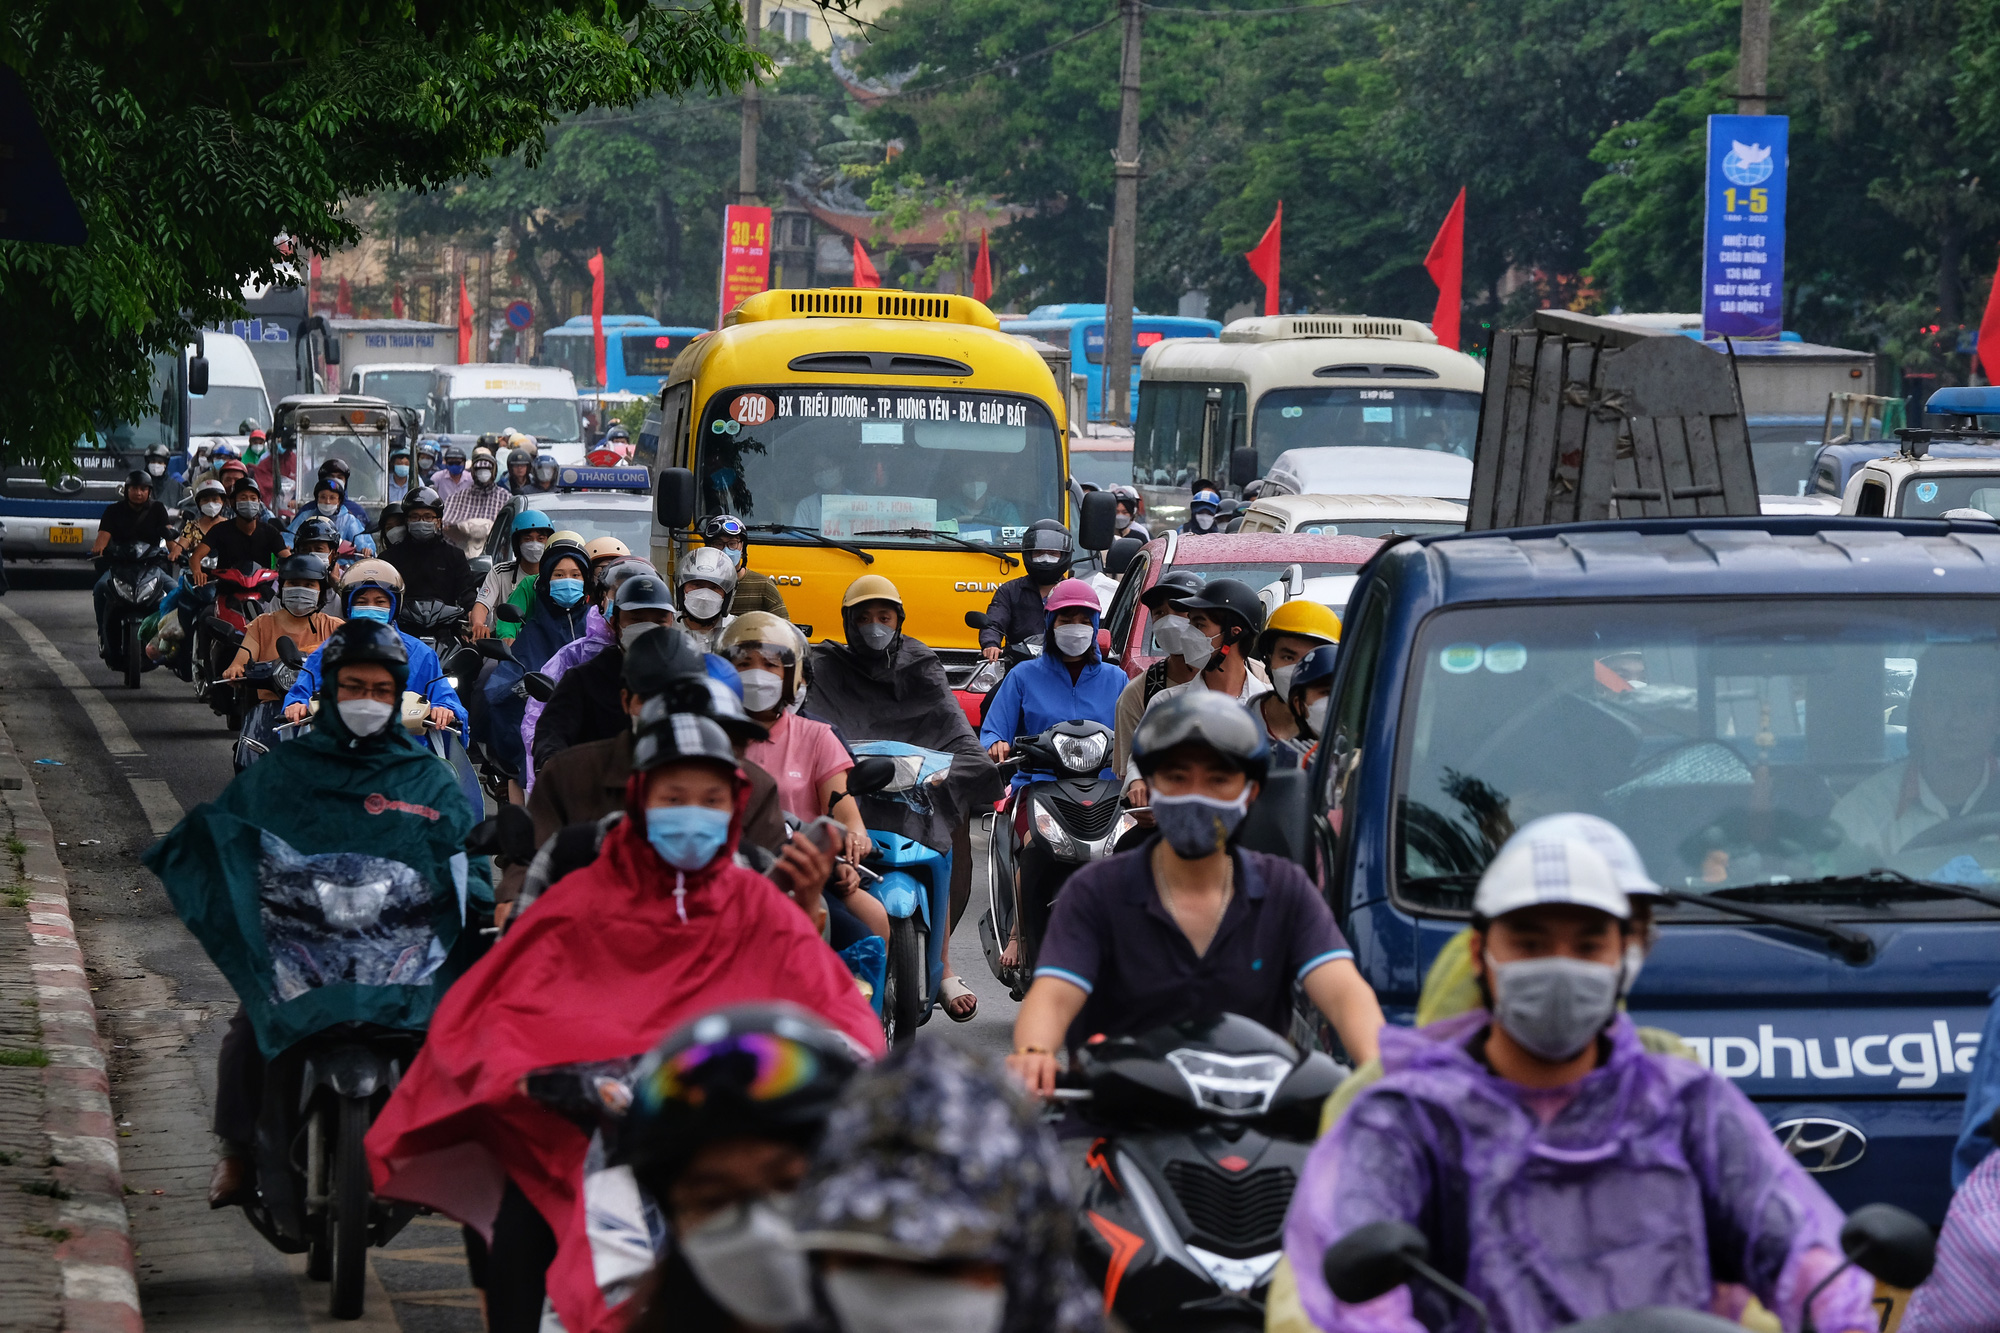 CẤP BÁO: Đường phố Hà Nội đang kẹt cứng, hàng nghìn người về quê nghỉ lễ chôn chân dưới cơn mưa nặng hạt - Ảnh 2.